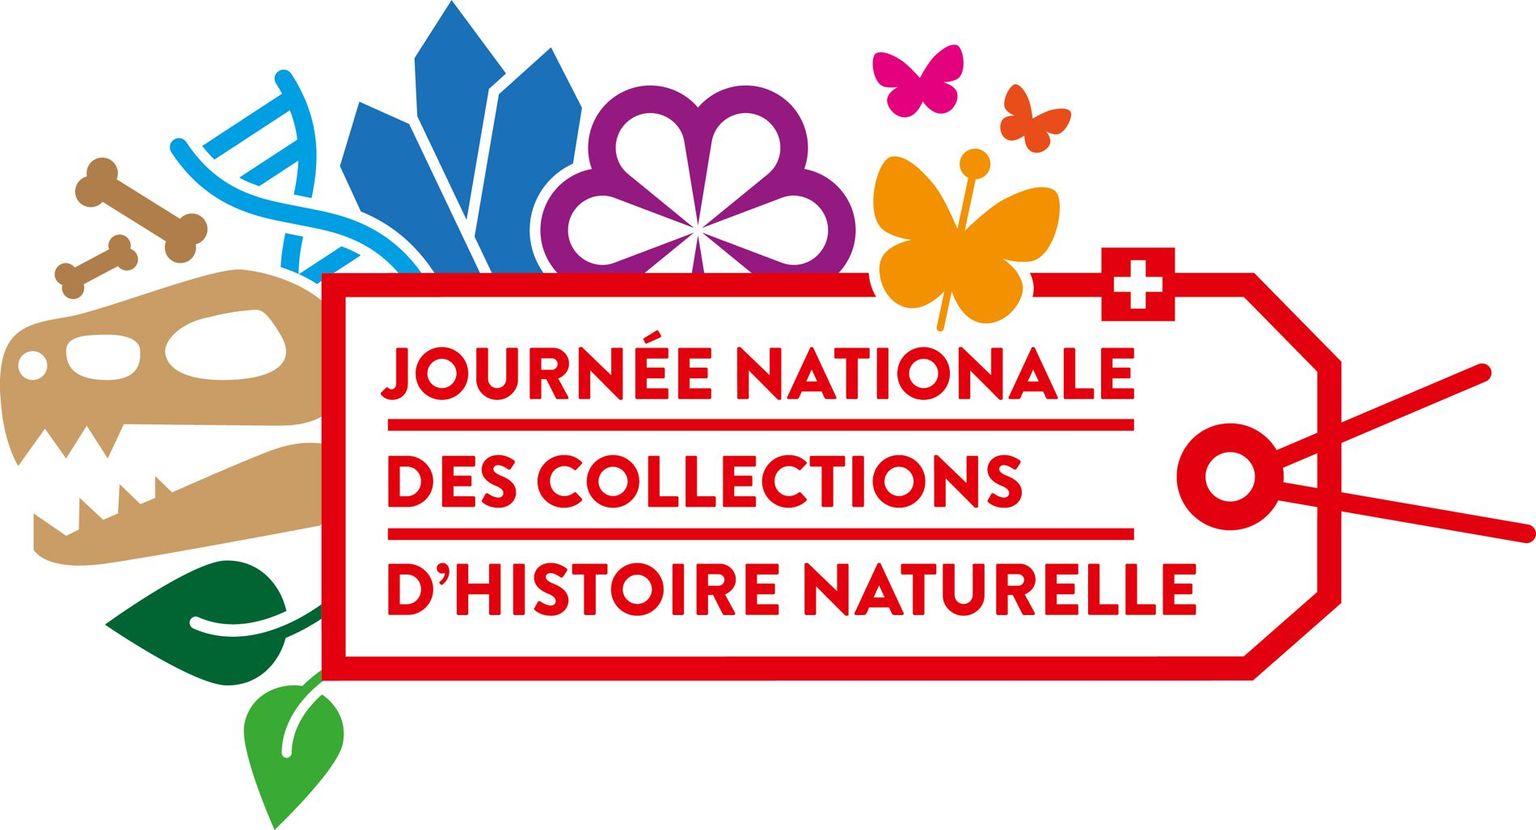 Journée nationale des collections d'histoire naturelle